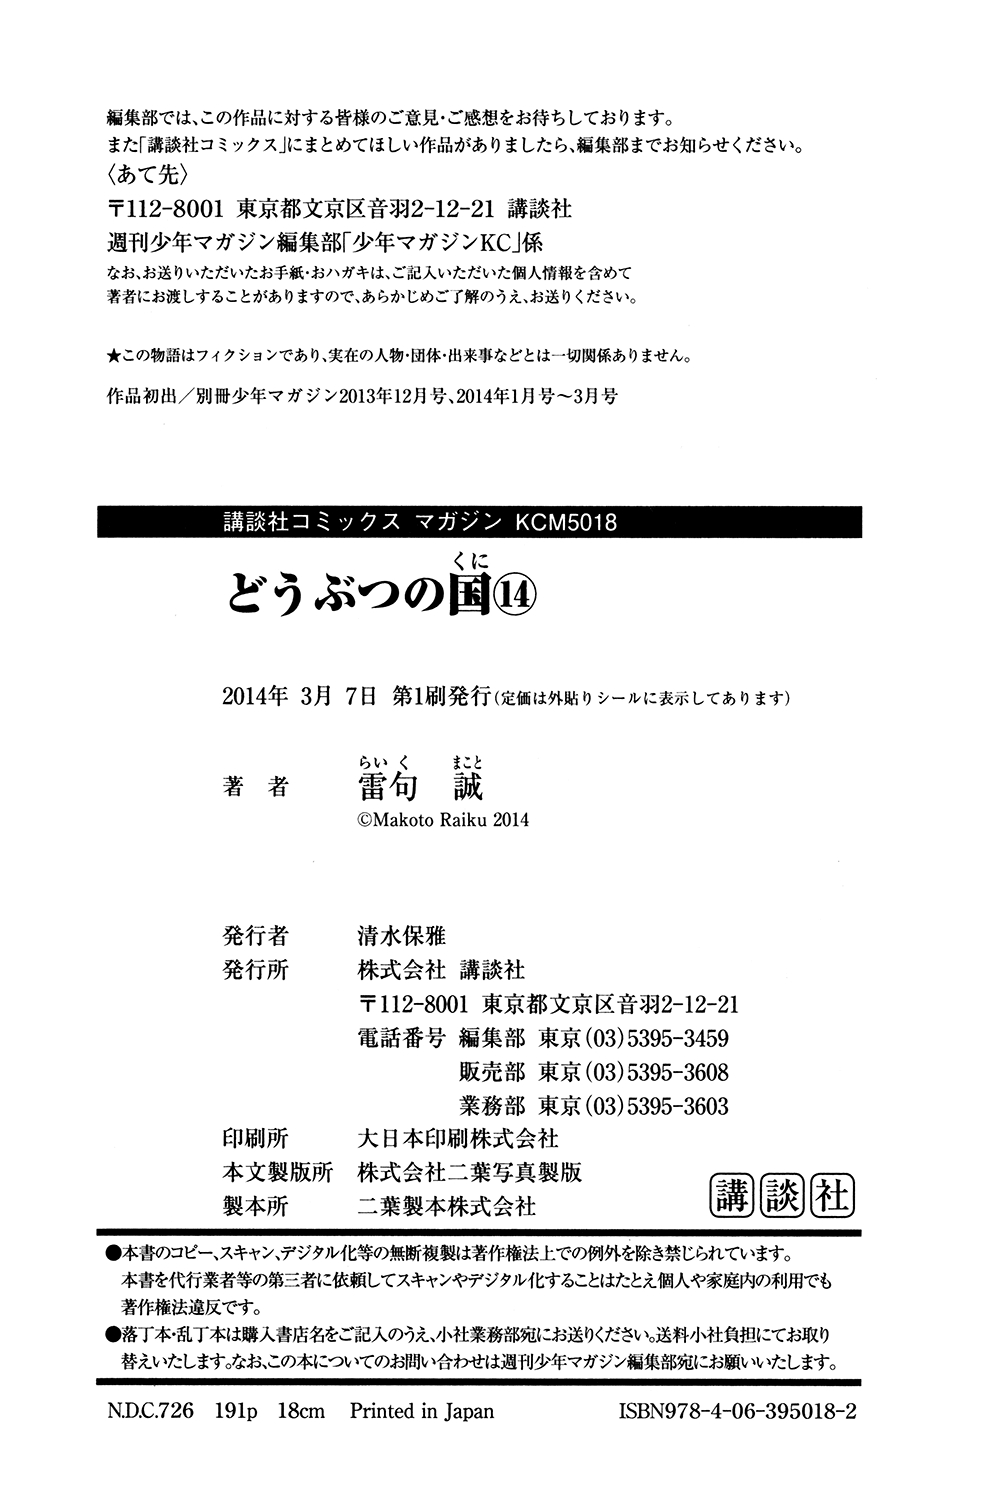 Doubutsu no Kuni Vol. 14 Ch. 53.5 Omake